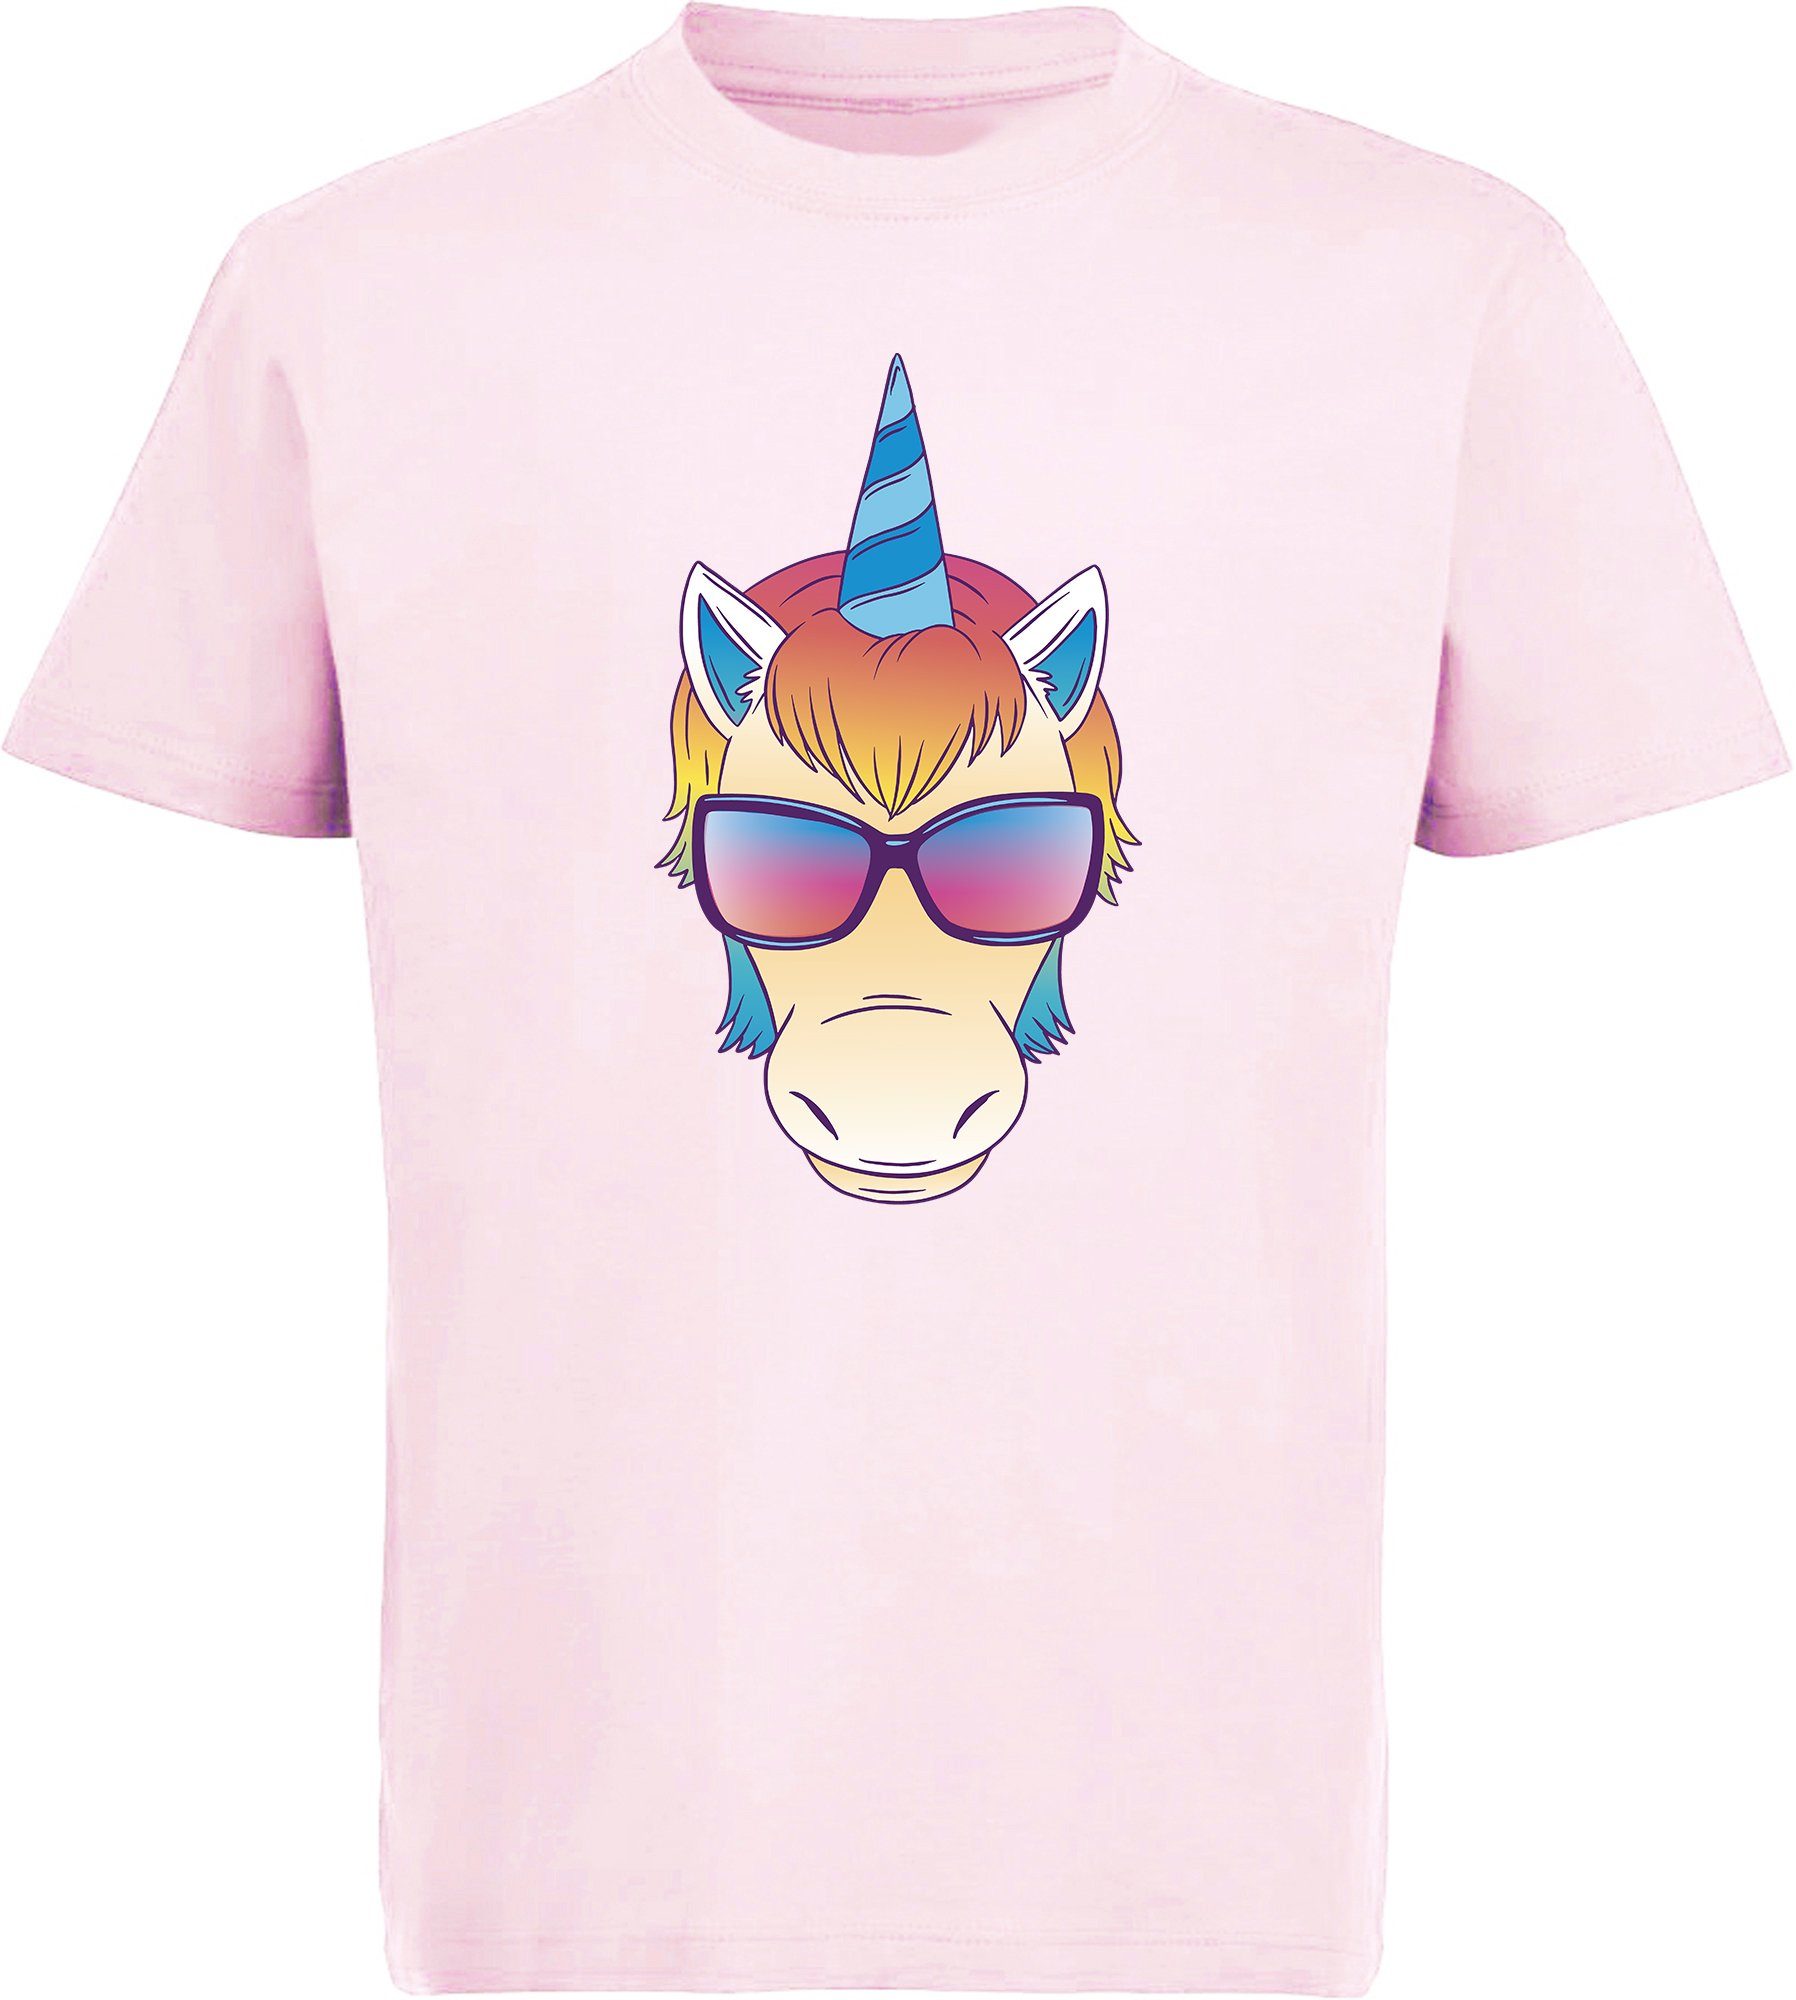 MyDesign24 T-Shirt Kinder Print Shirt bedruckt - Einhorn Kopf mit Sonnenbrille Baumwollshirt mit Aufdruck, i255 rosa